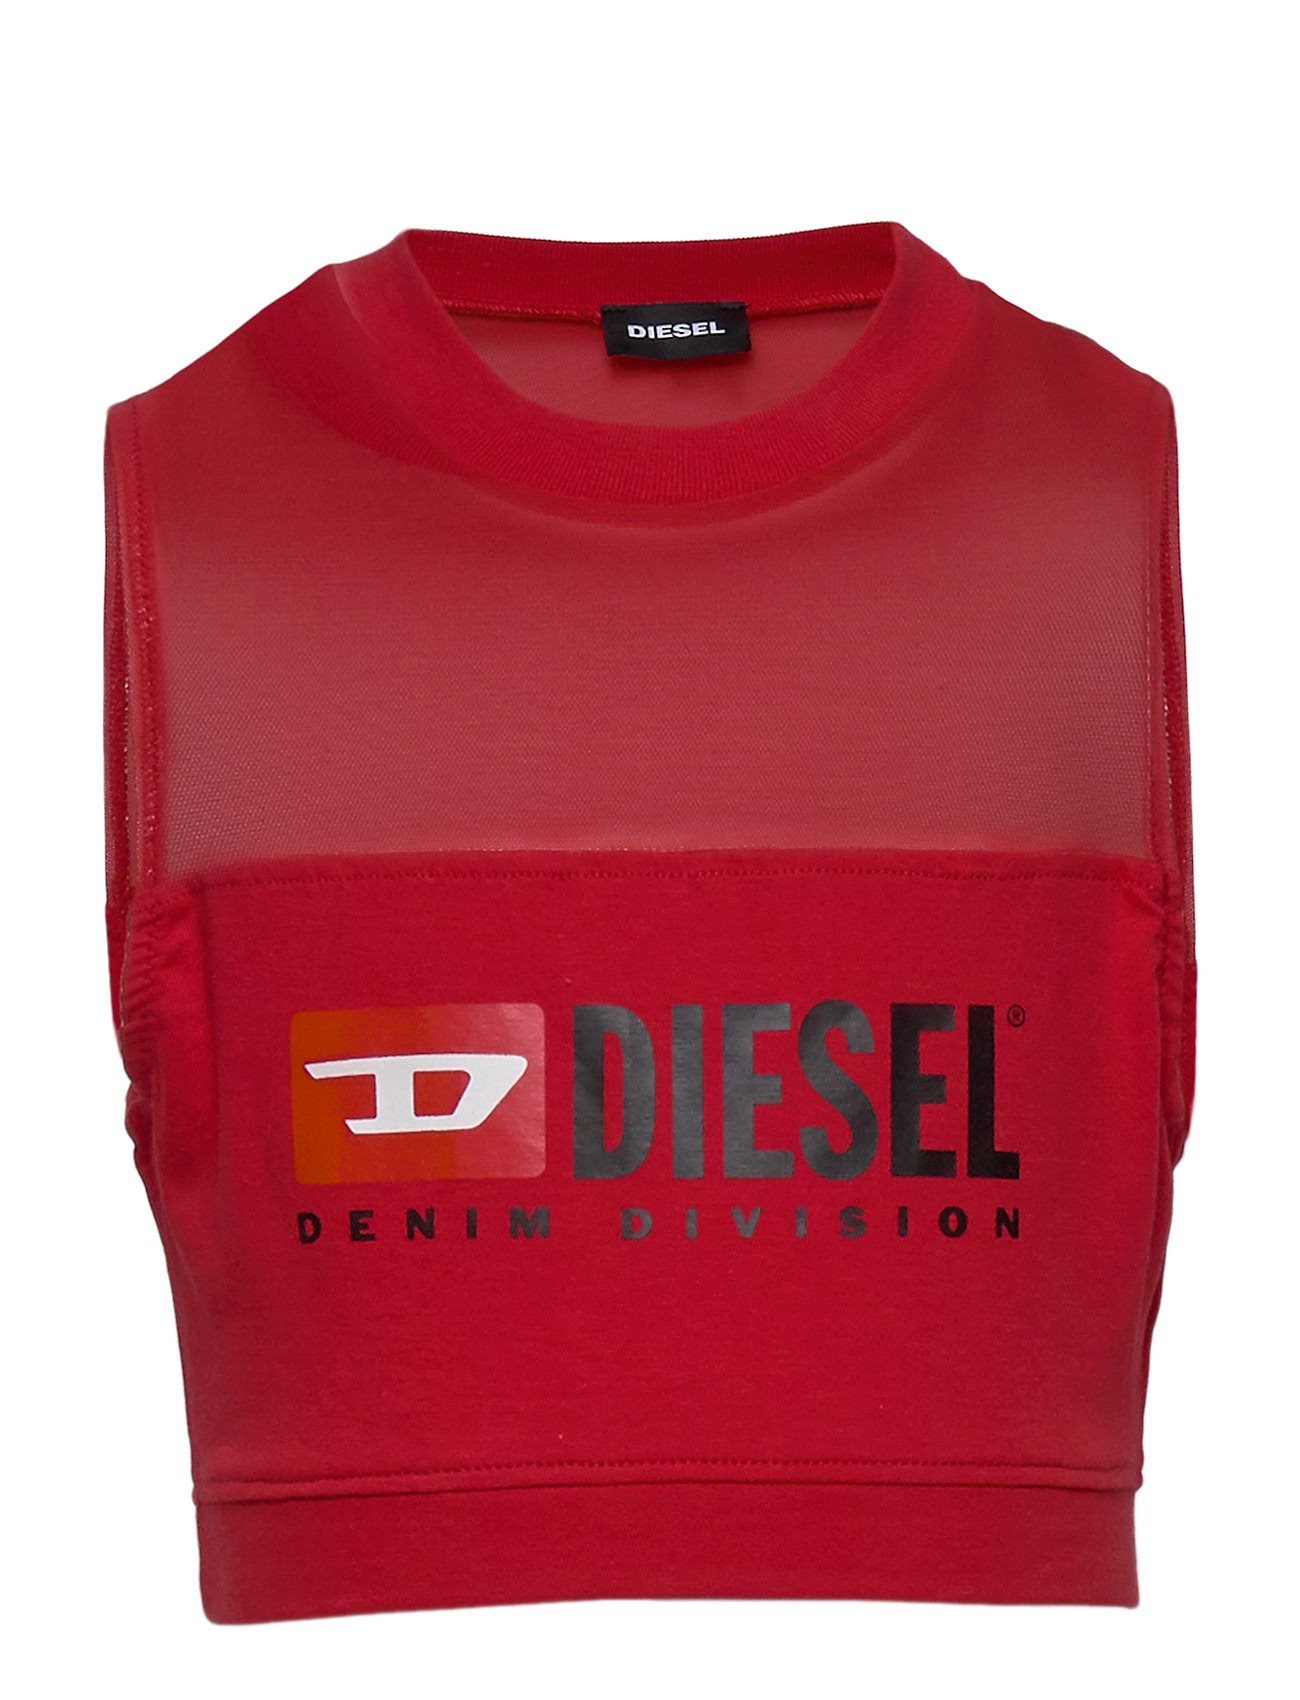 diesel t shirt red